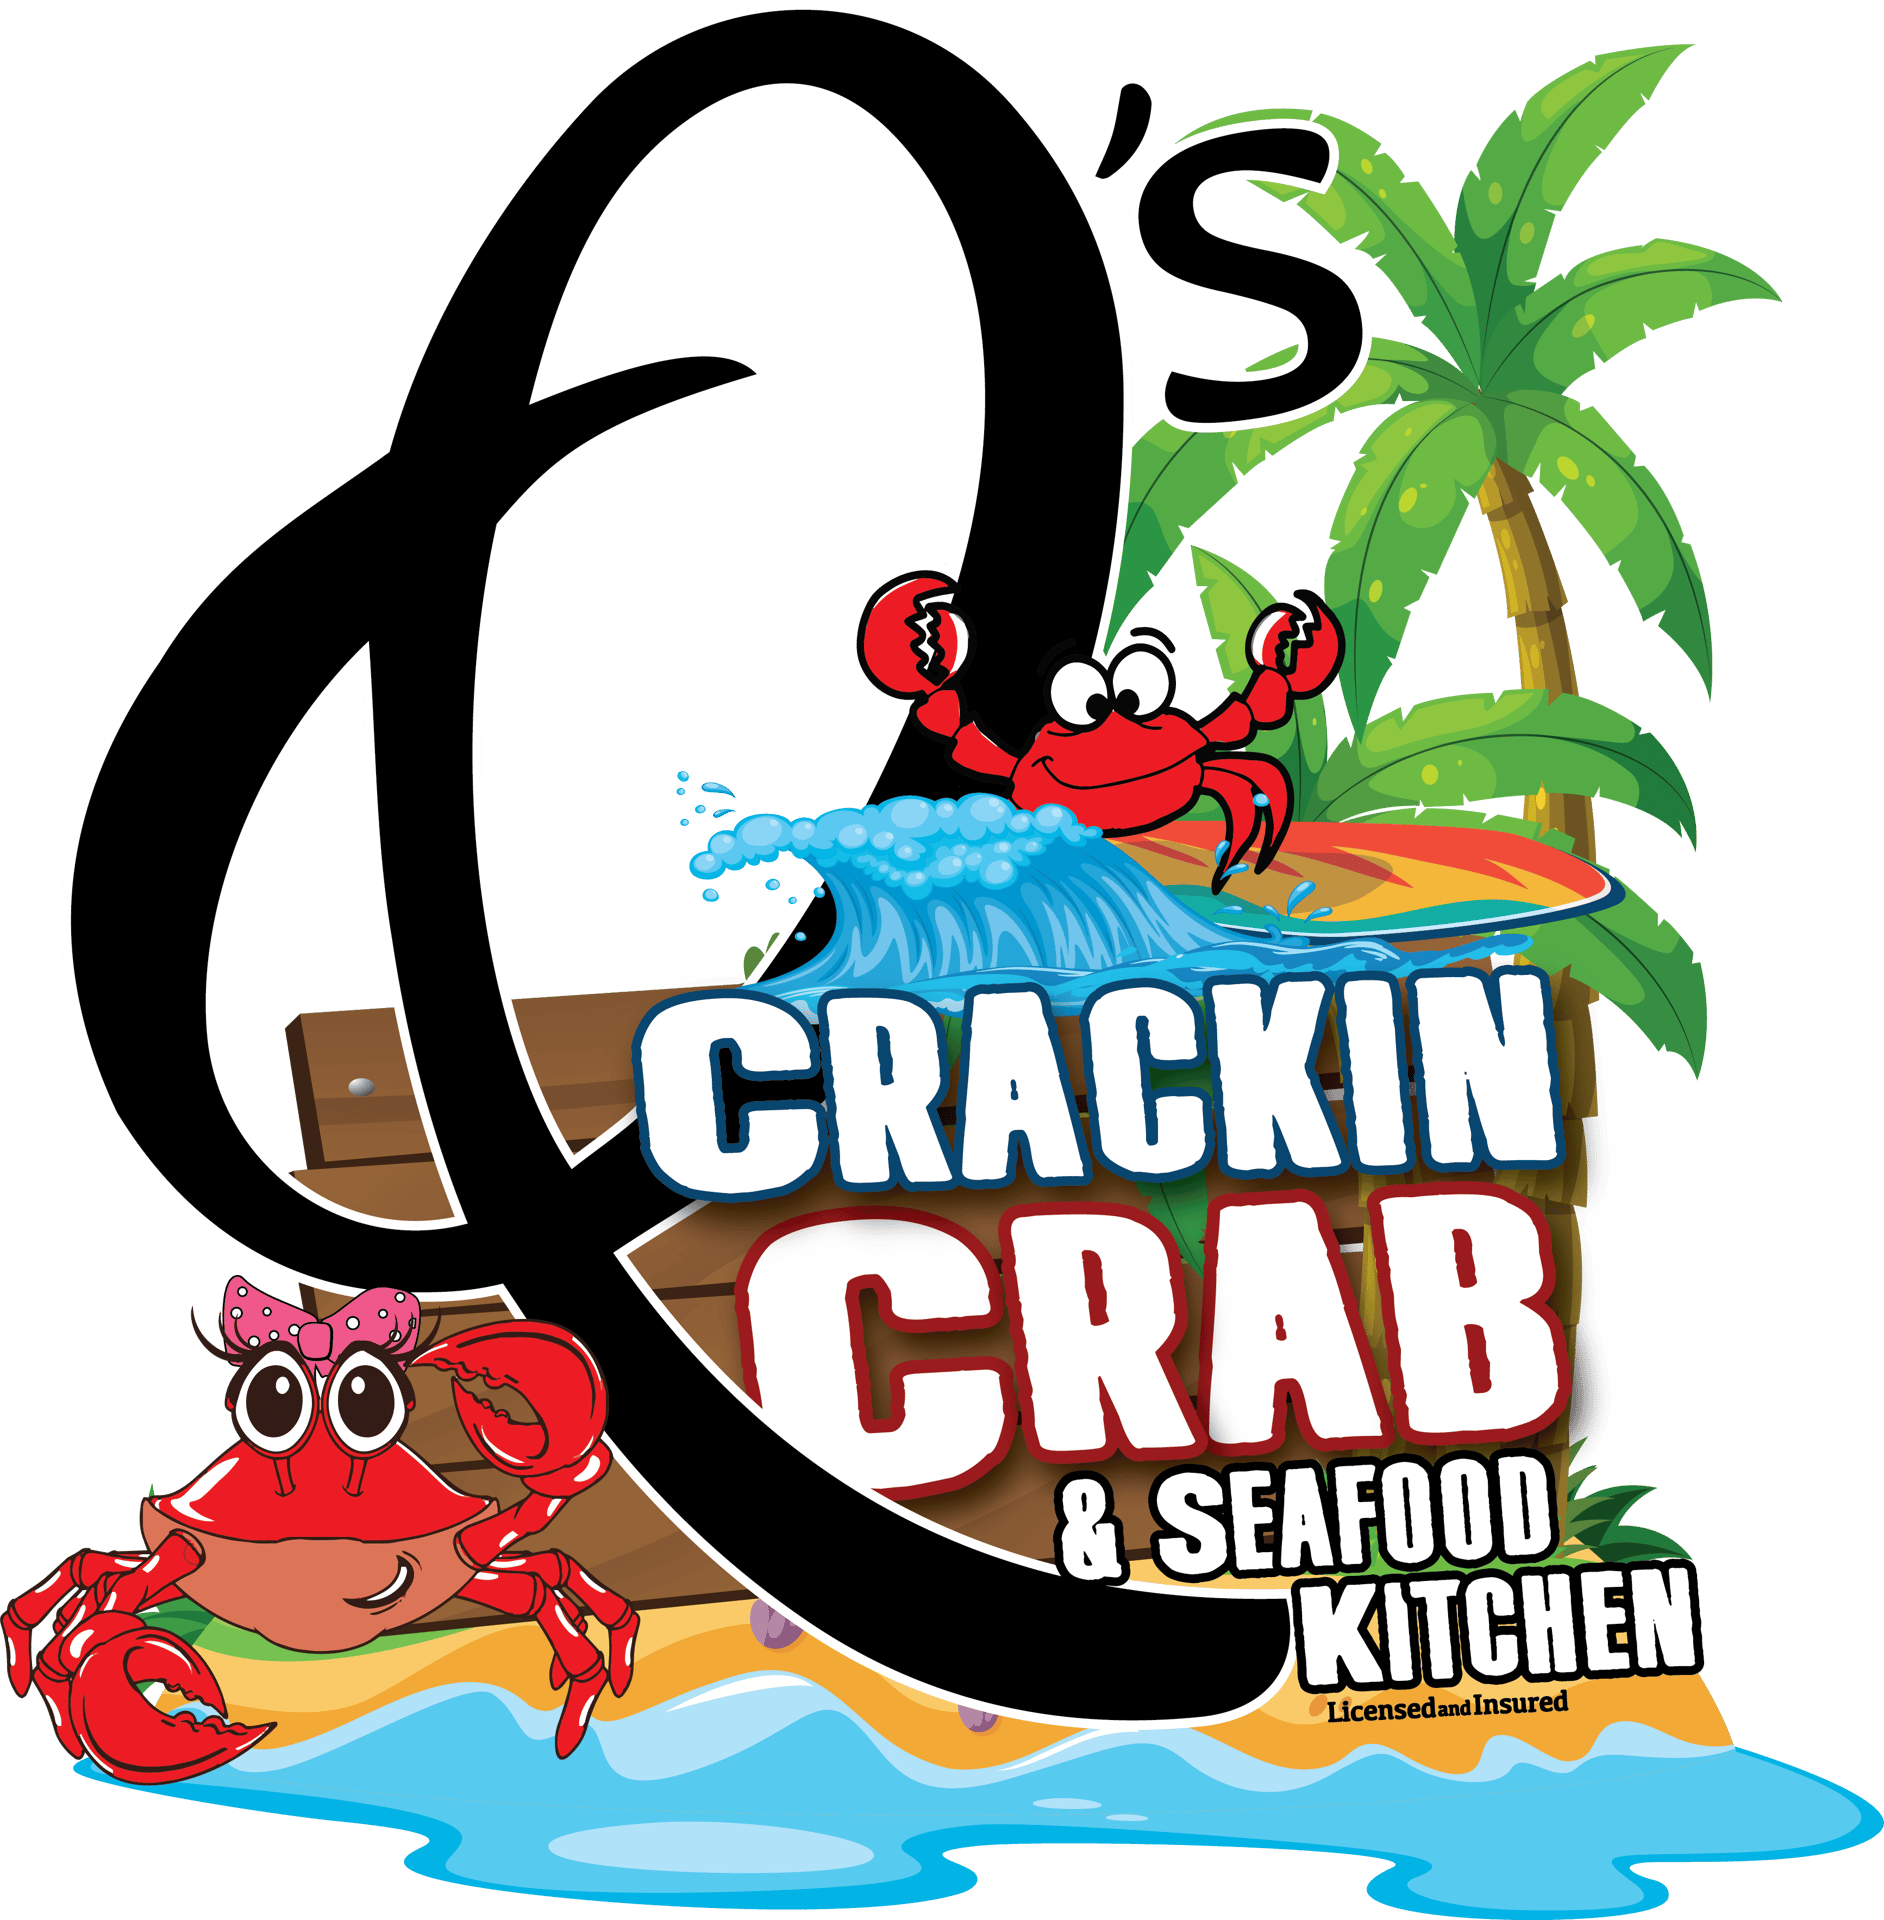 q's crackin' crab